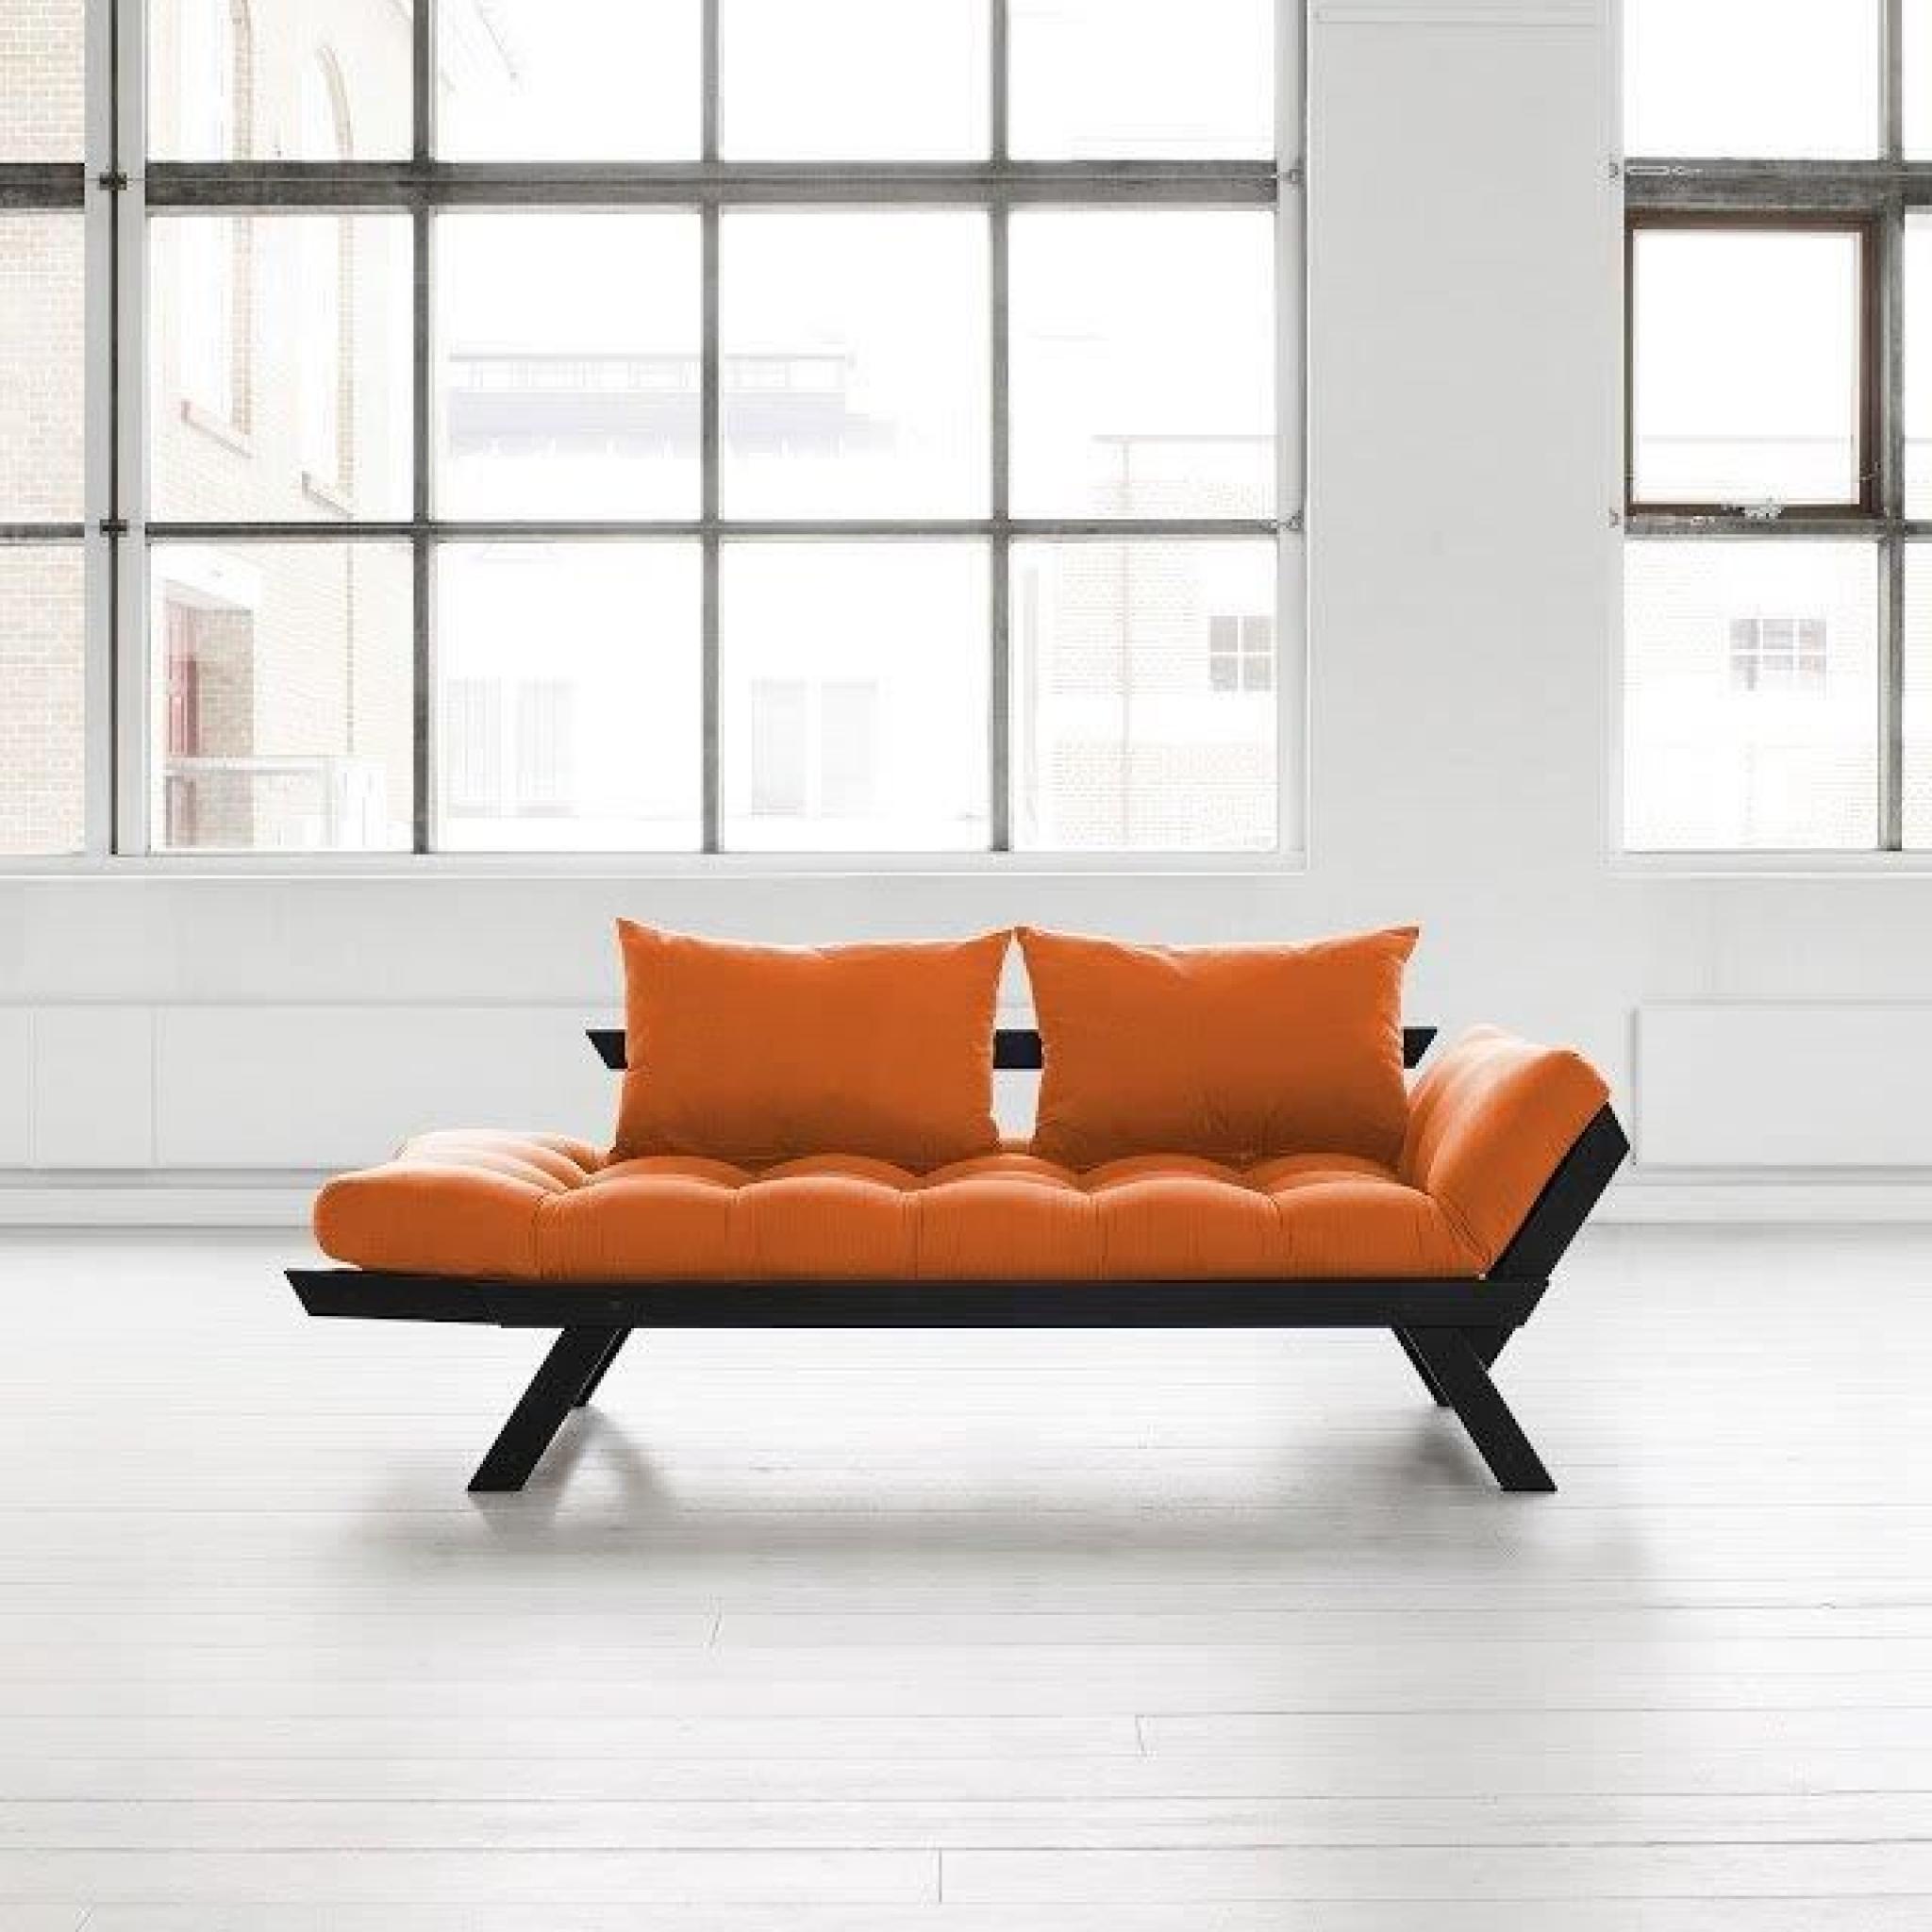 Banquette méridienne noire futon orange BEBOP couchage 75*200cm pas cher